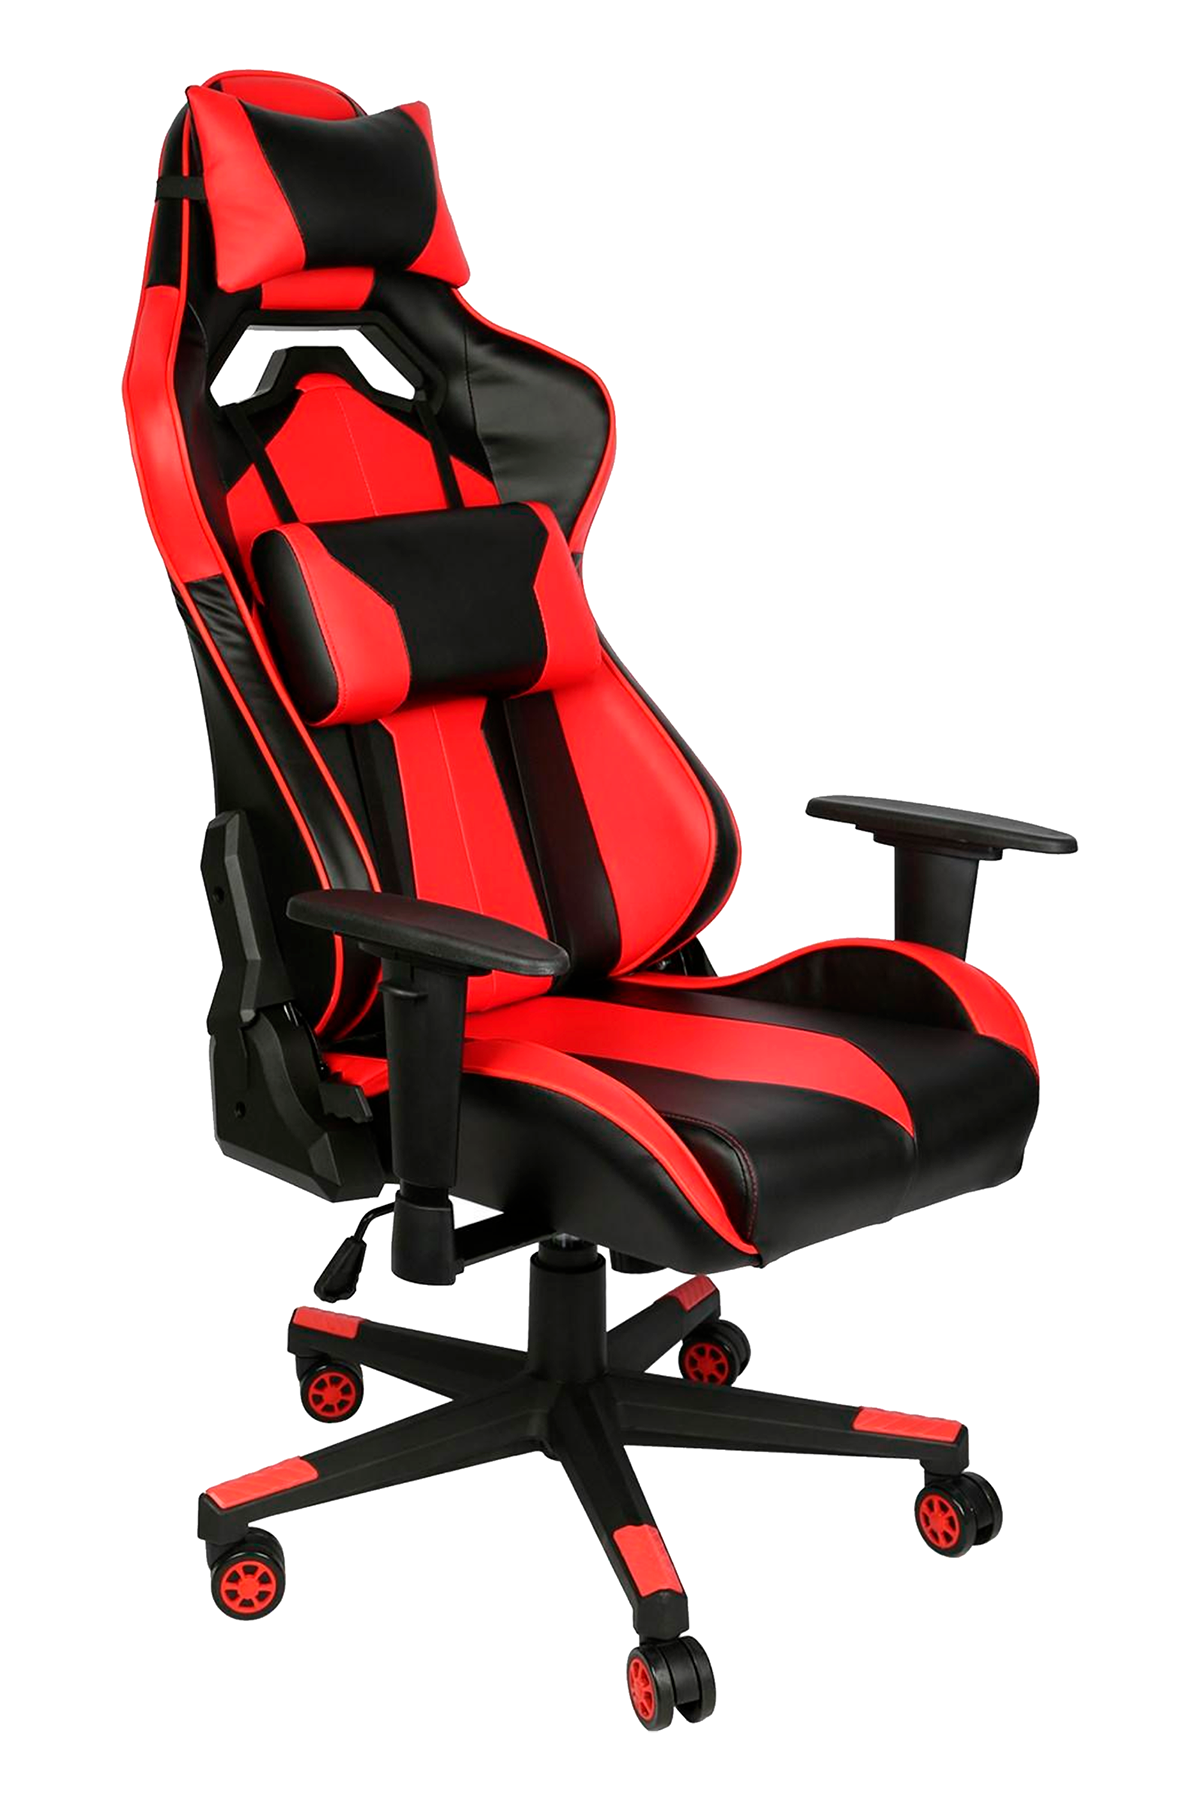 Дизайн этого кресла запатентован в Великобритании китайским заявителем